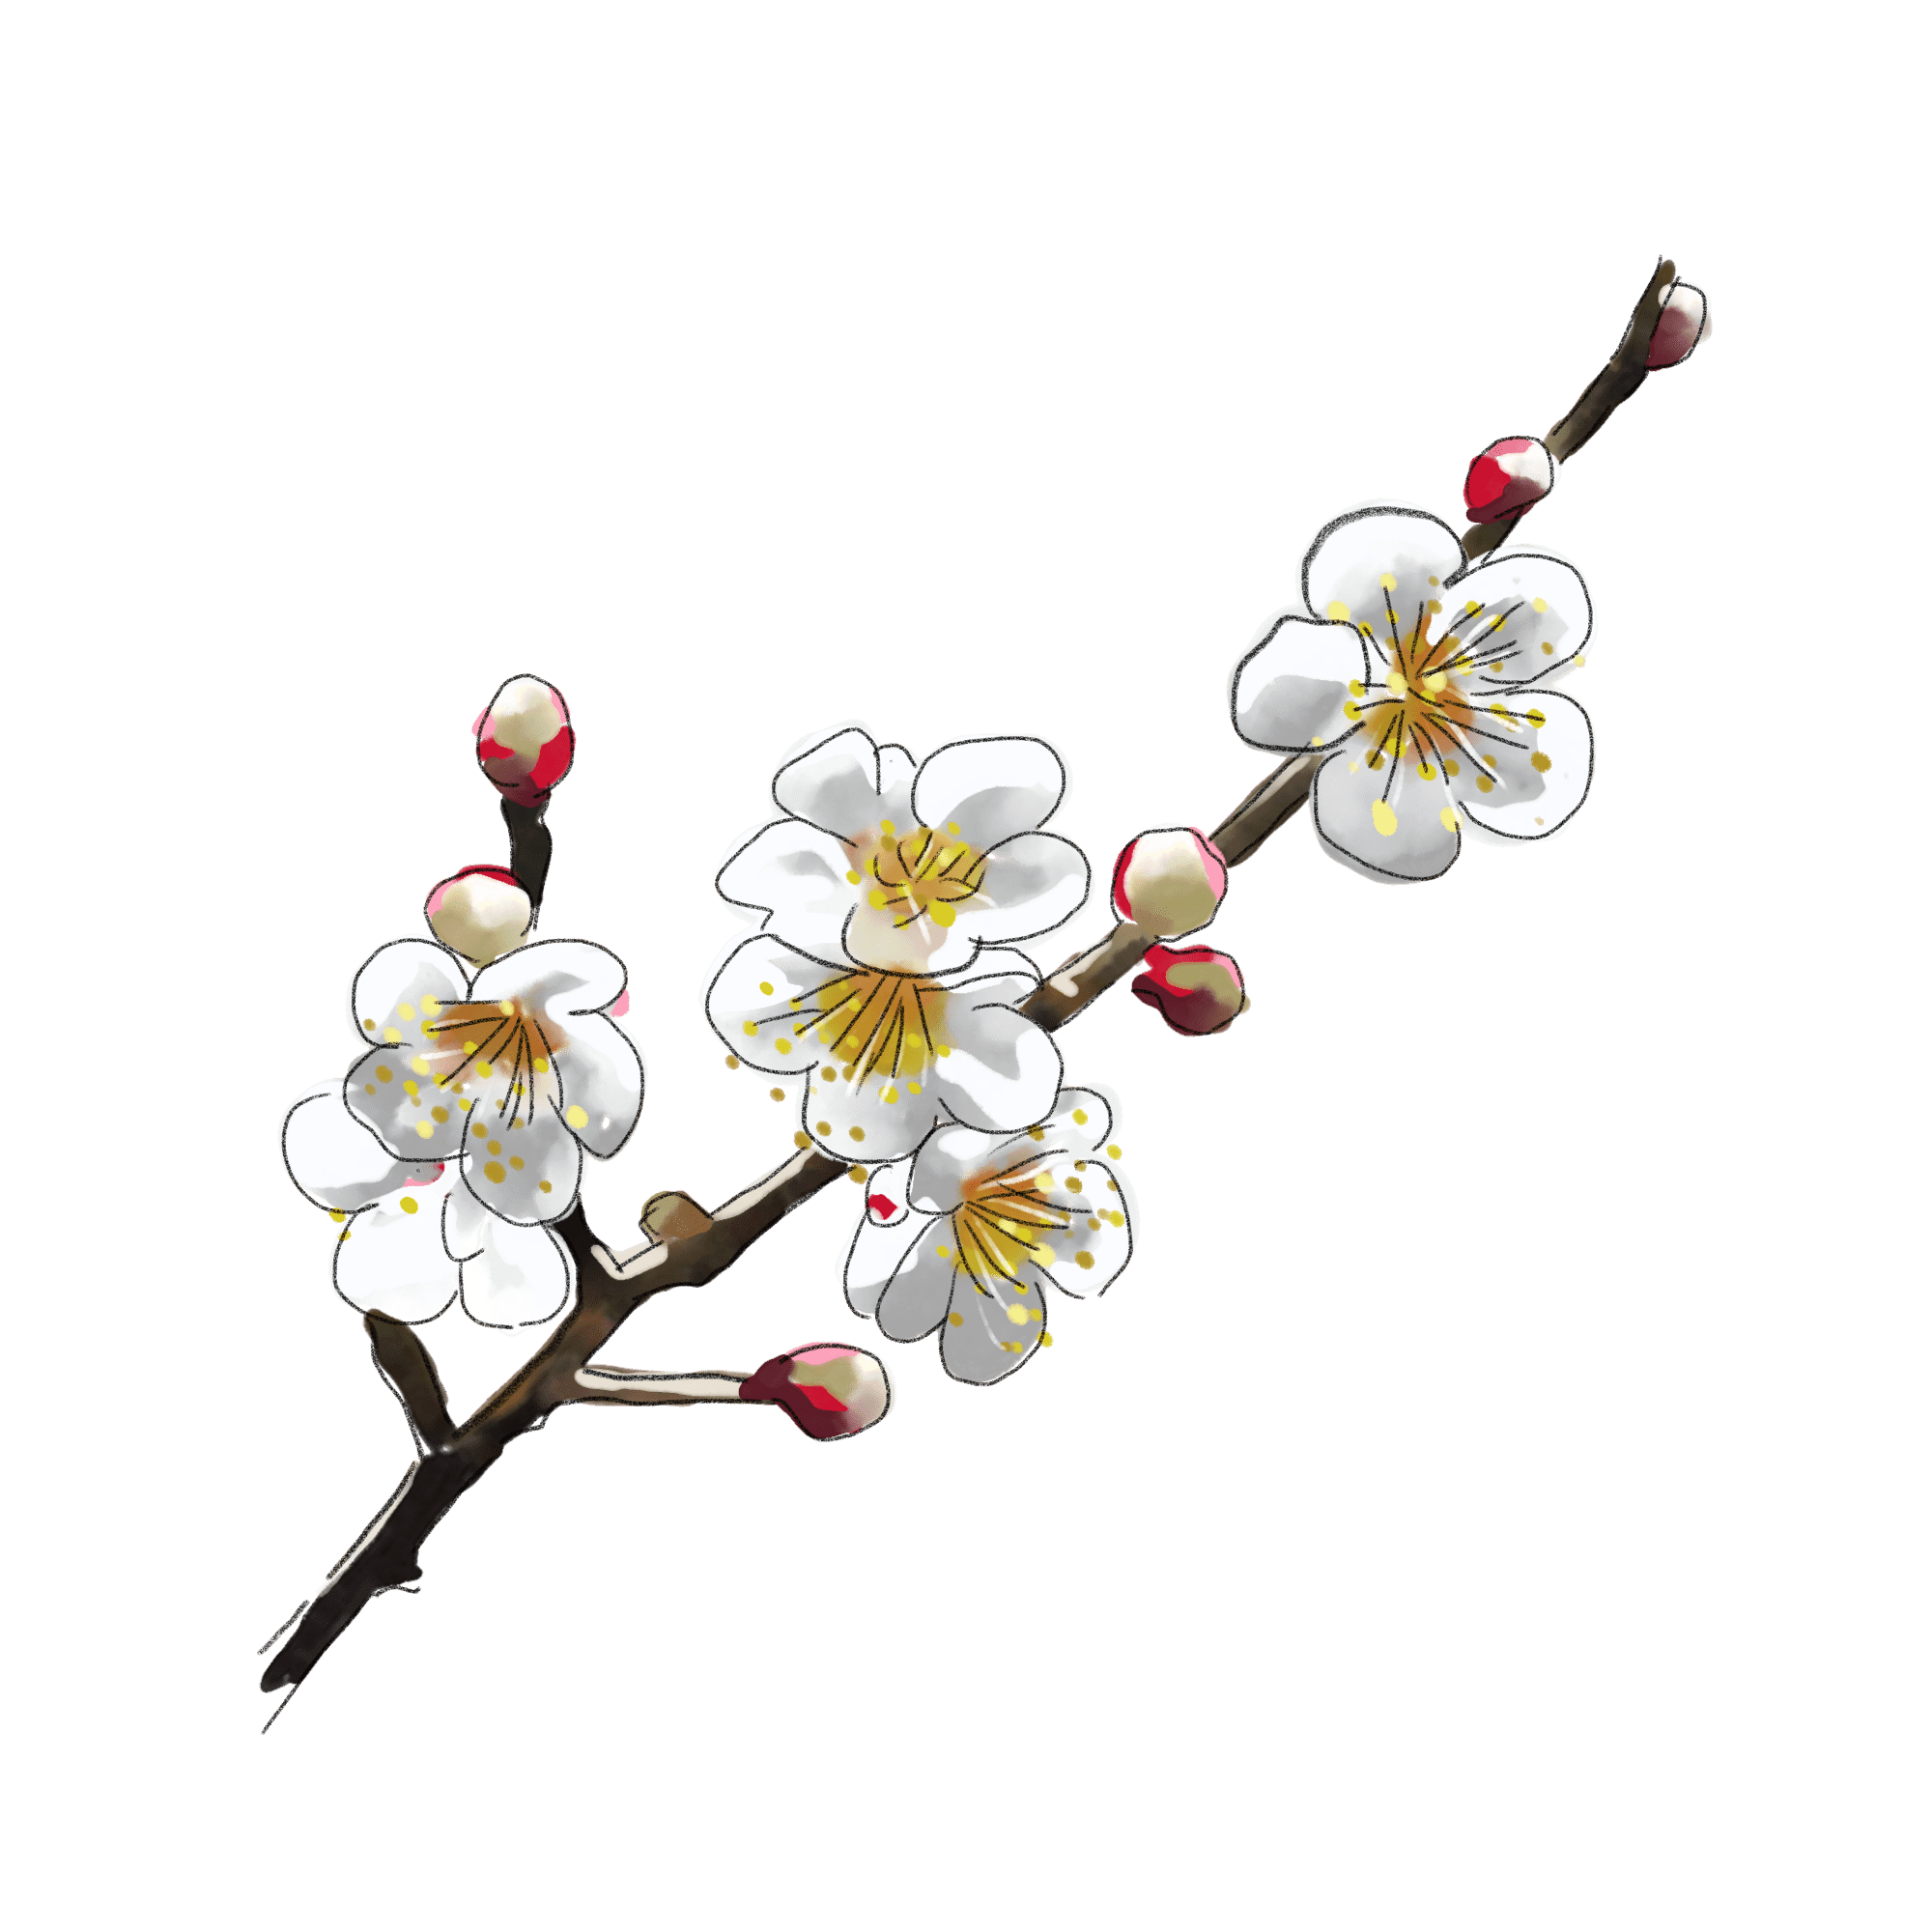 梅の花のイラスト 01 フリー素材 Greenstock40